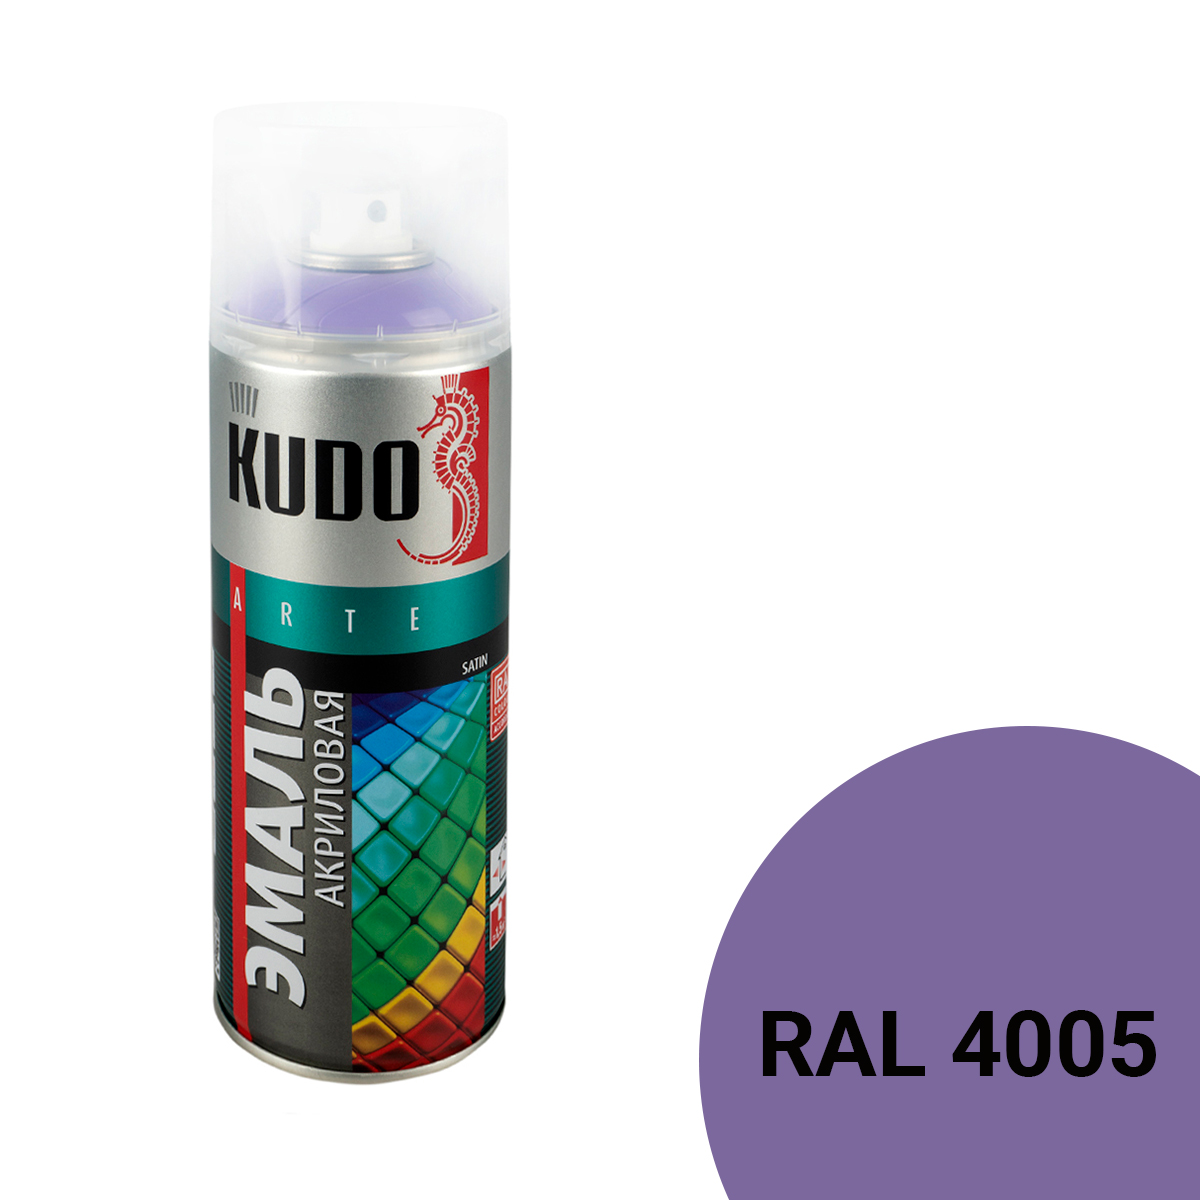 Аэрозольная акриловая краска Kudo Satin KU-0A4005, 520 мл, фиолетовая 